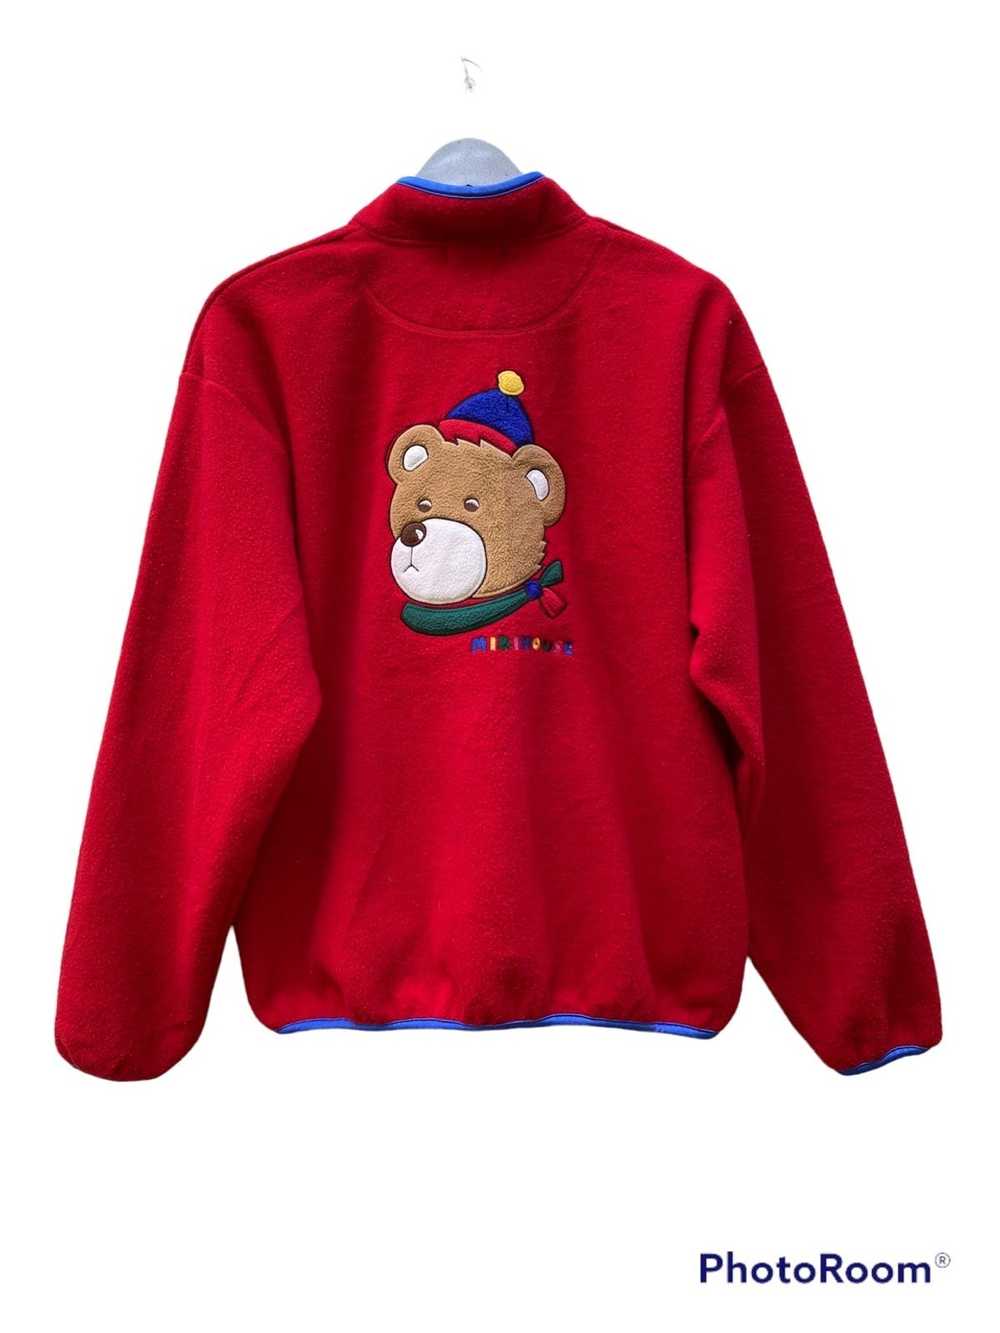 Japanese Brand Miki house fleece sweatshirt - image 1